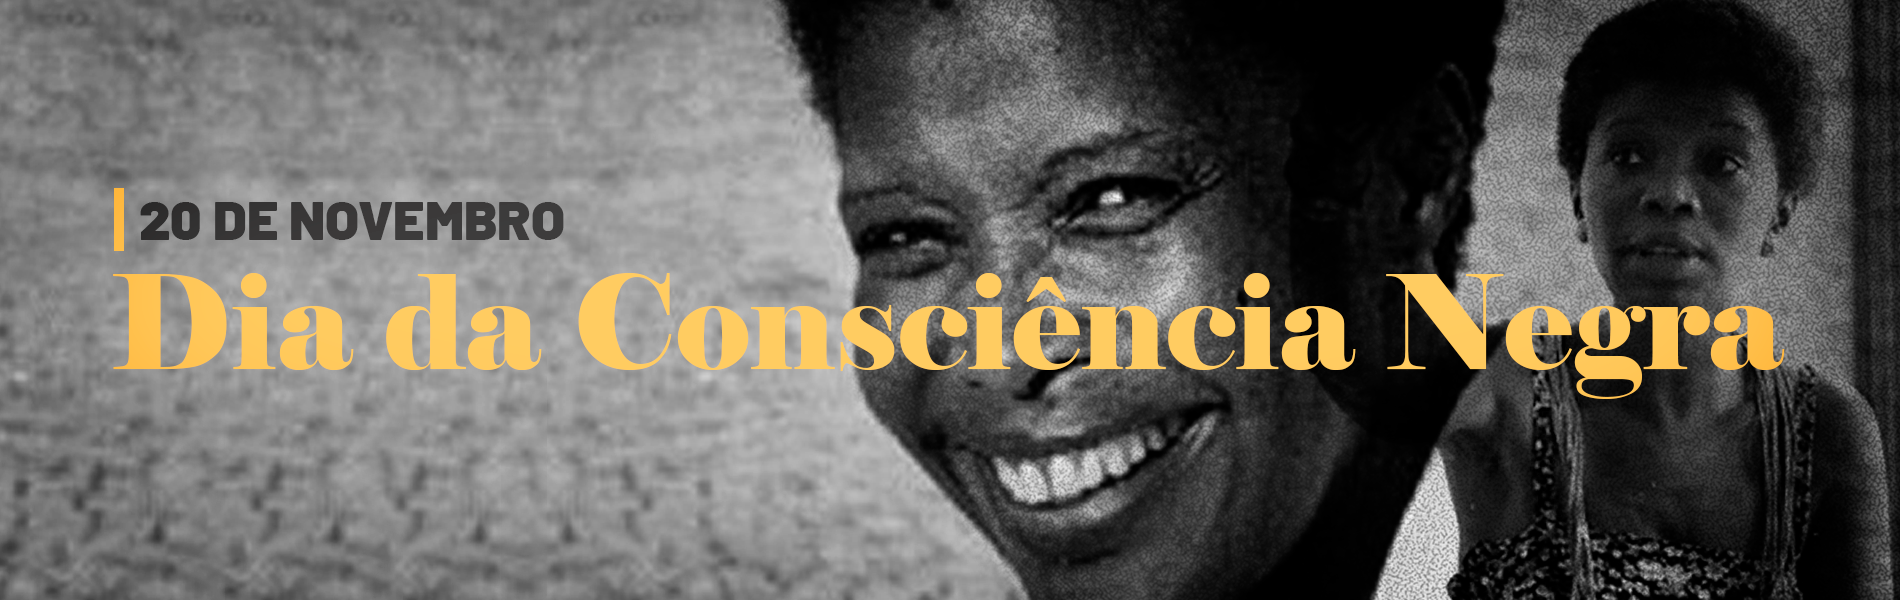 Imagem de uma mulher negra com o texto "20 de novembro - Dia da Consciência Negra"